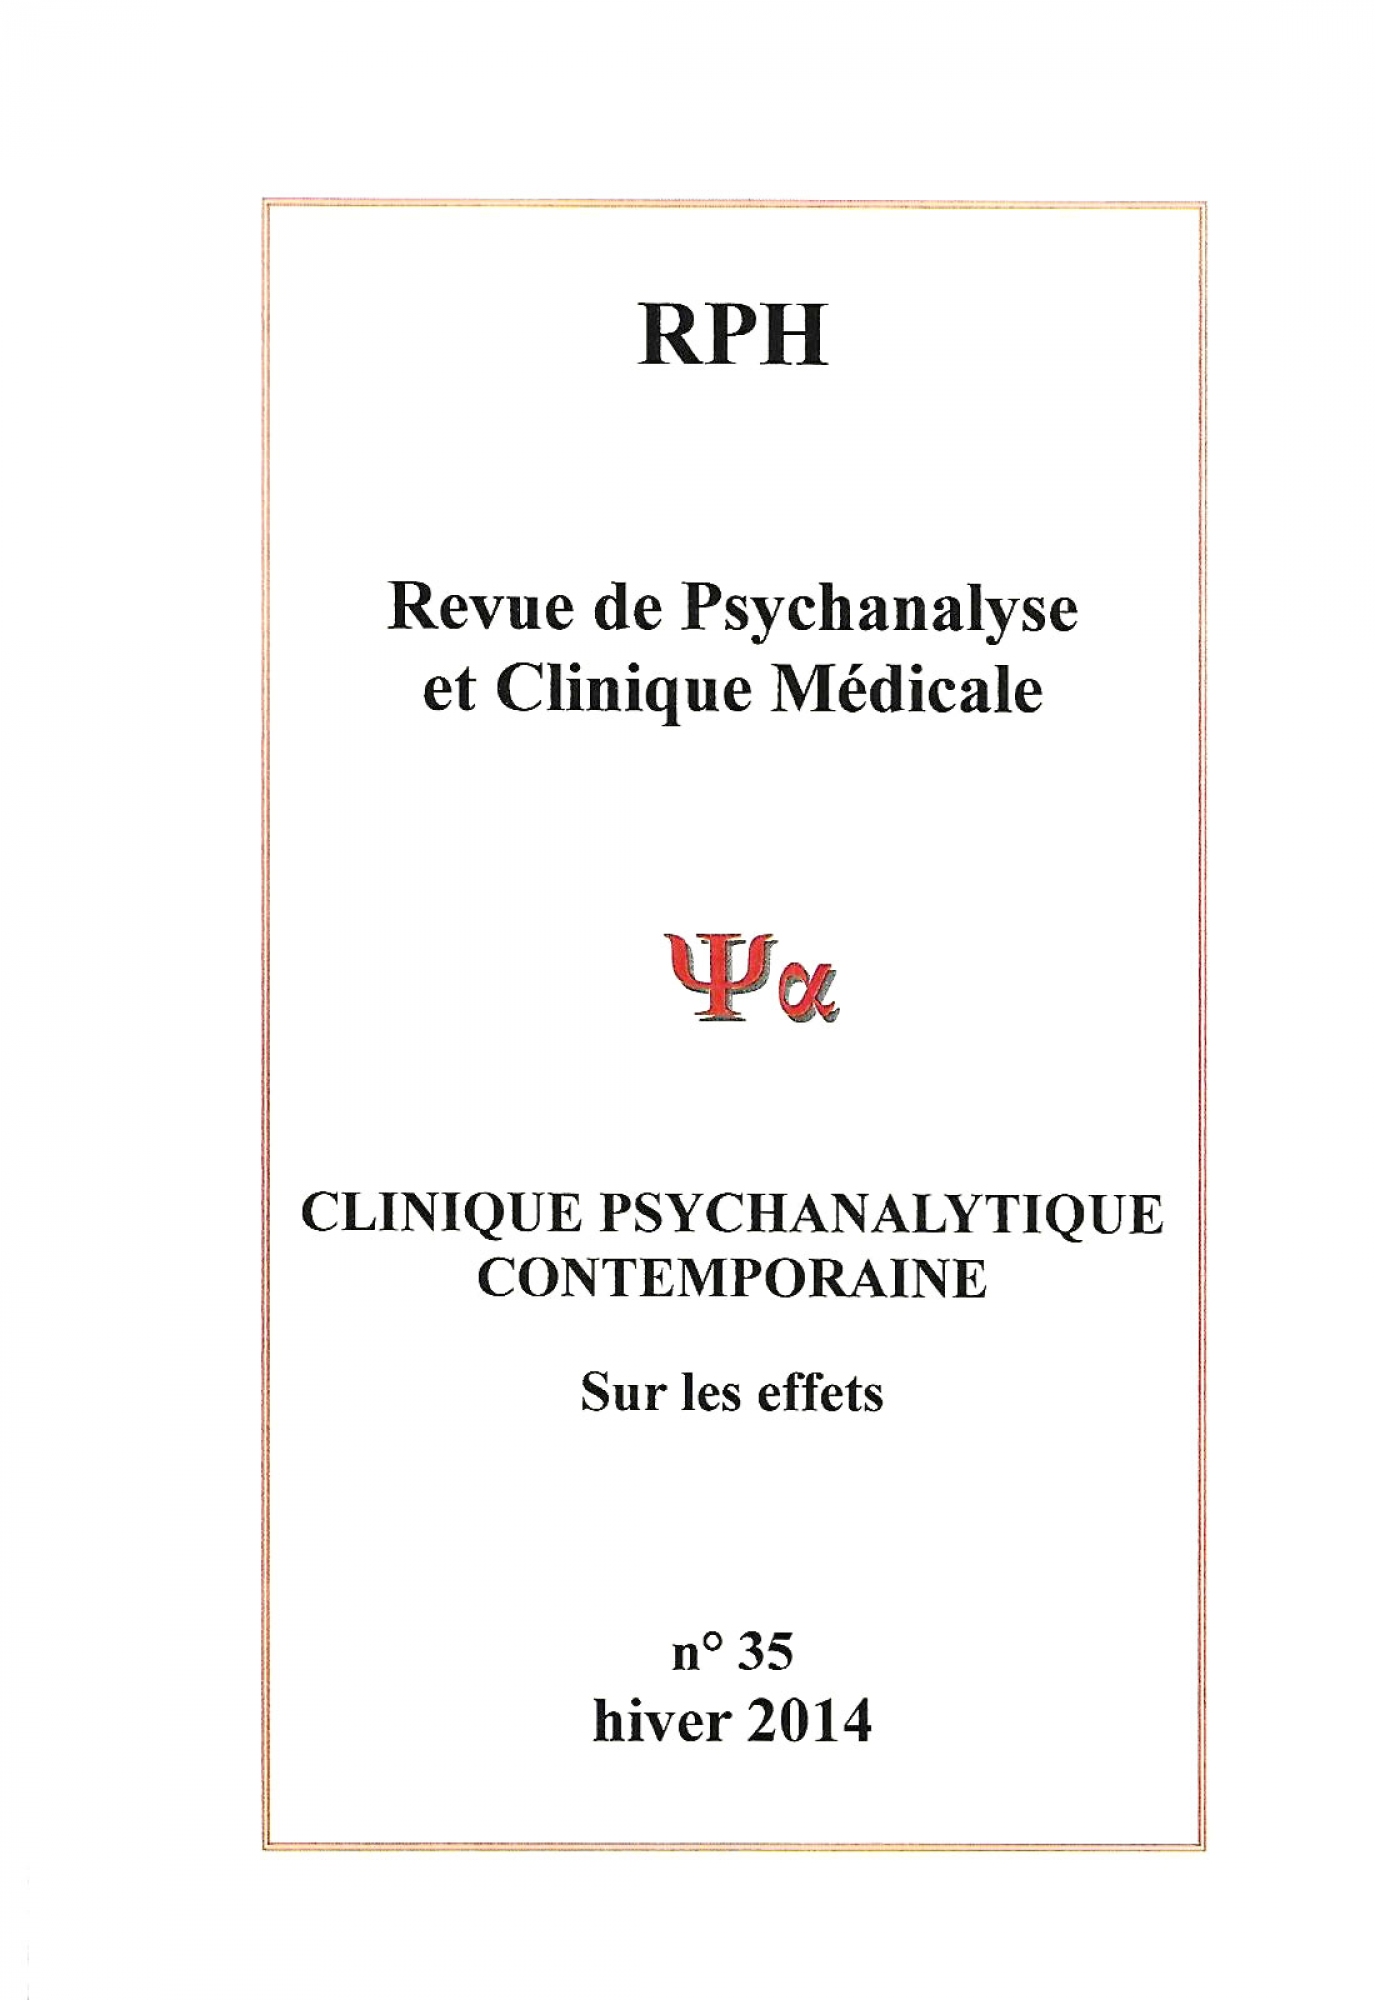 Consulter revue de psychanalyse à Paris 9